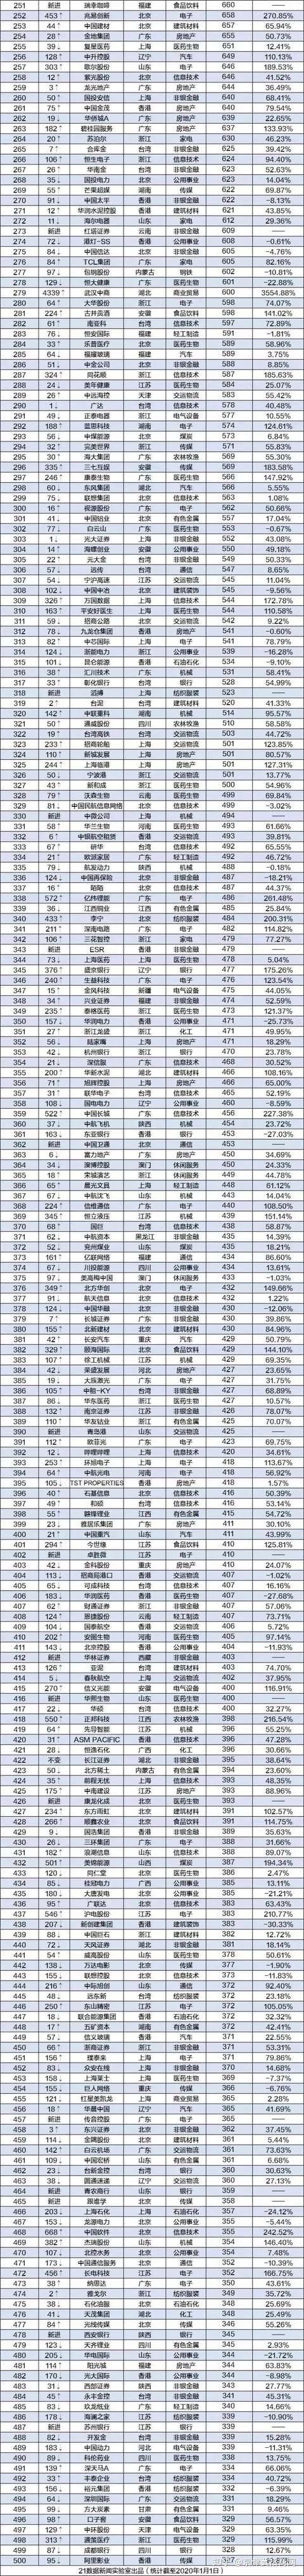 国内香港上市公司名单(国内上市化妆品公司)(图2)